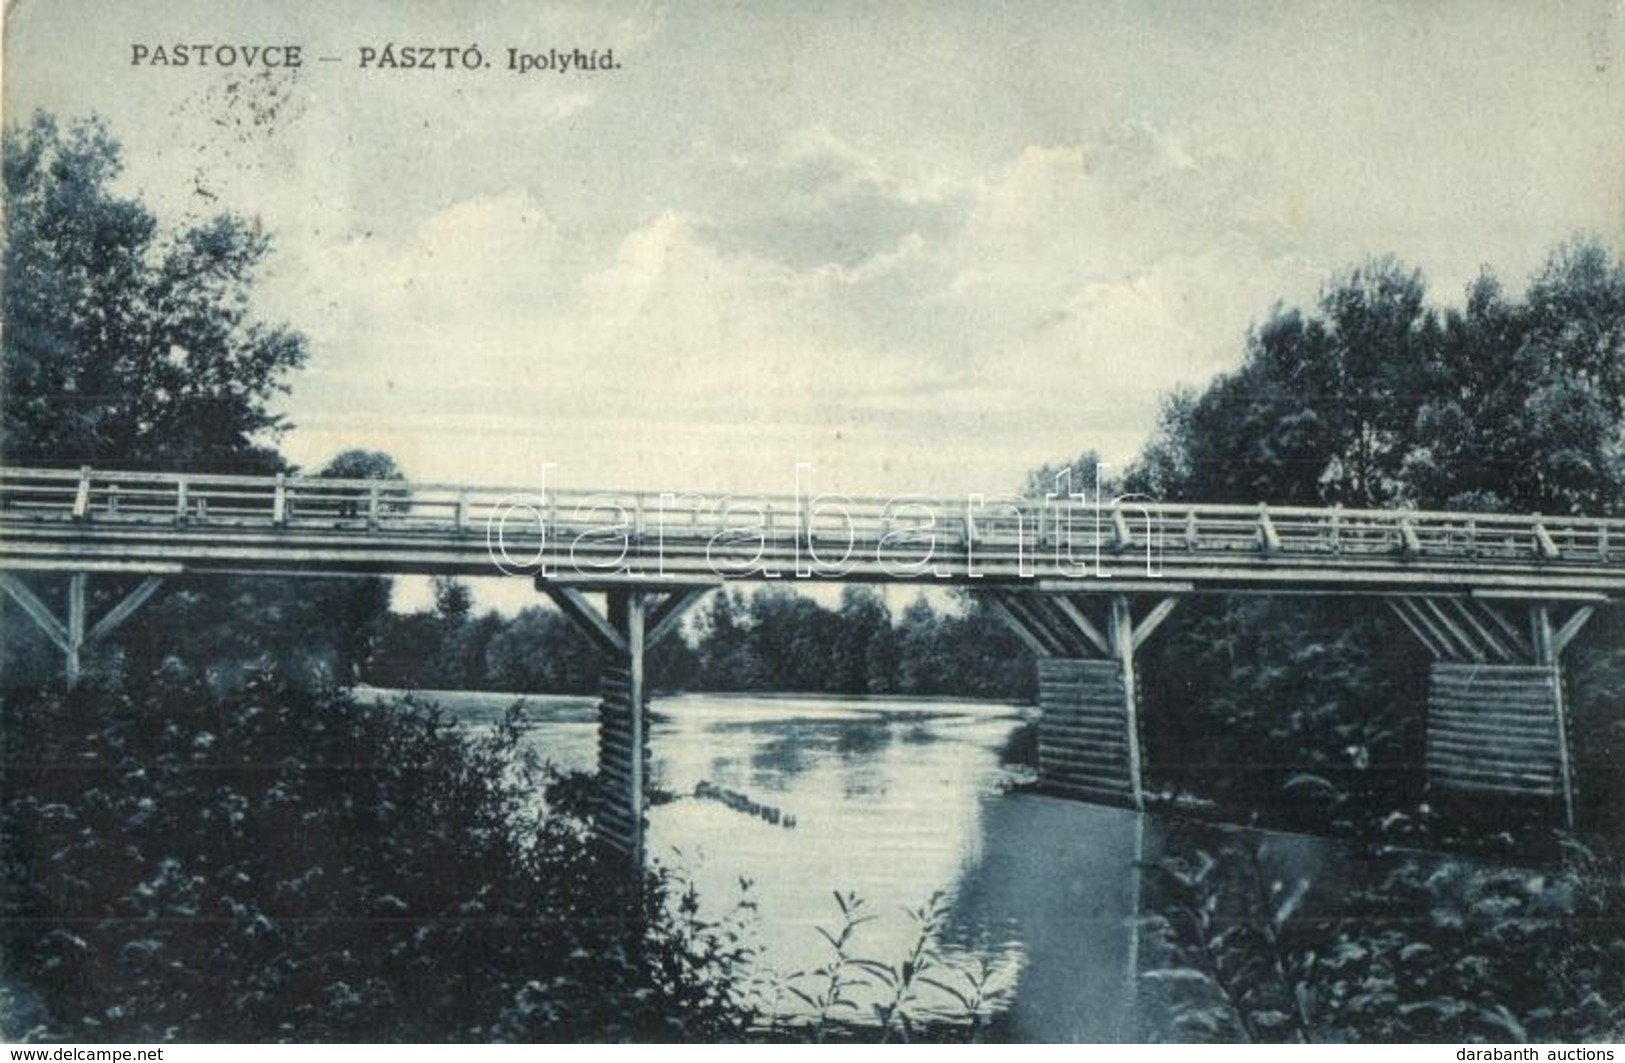 T2/T3 Ipolypásztó, Pásztó, Pastovce; Ipoly Híd / Ipel River Bridge (fl) - Unclassified